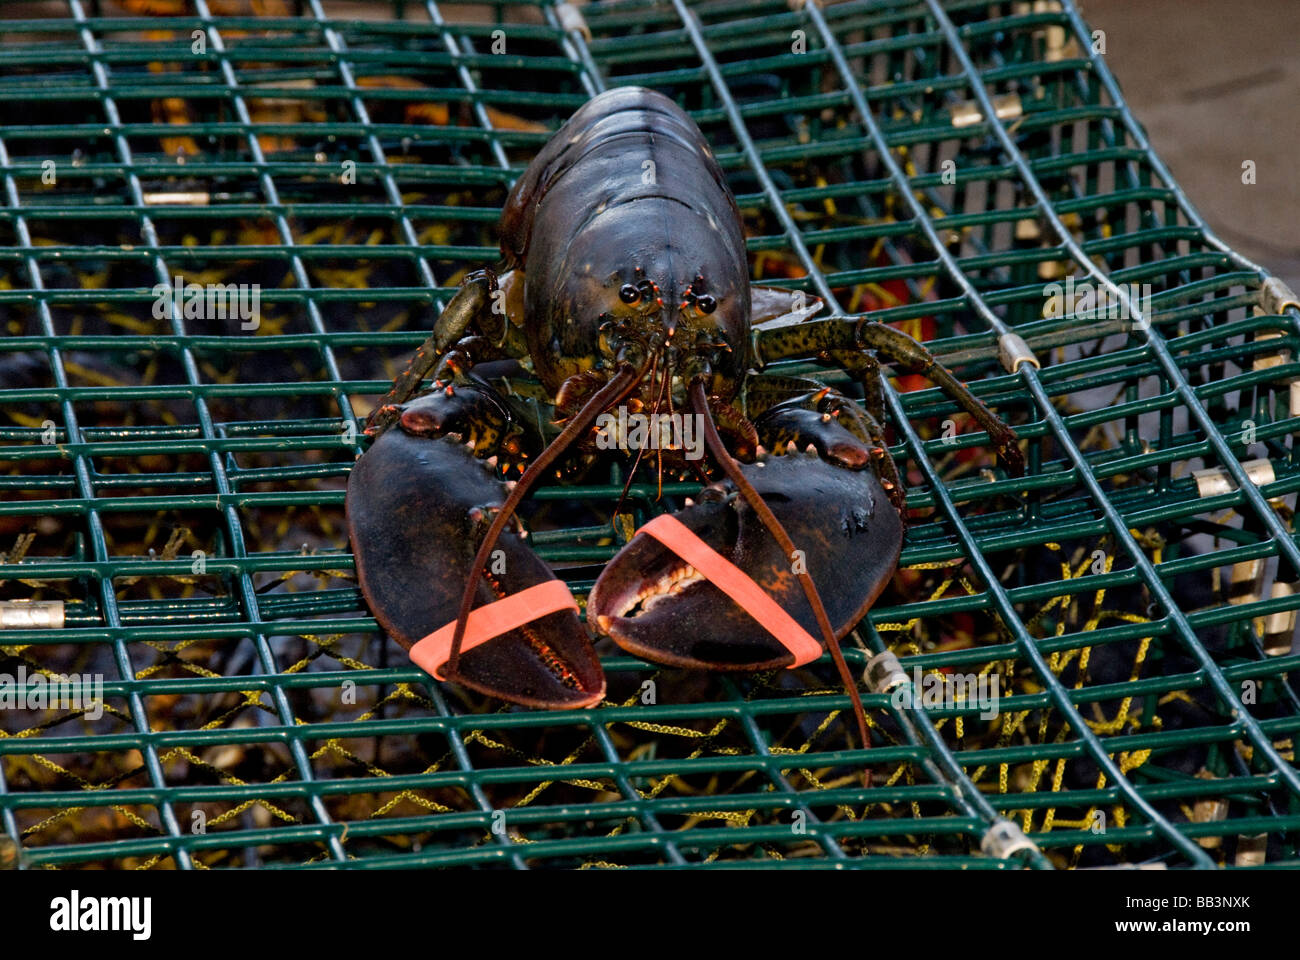 Canada, New Brunswick, Shediac, Pointe-du-Chene. Aragosta turistica scenic crociera con cena, appena catturati aragosta. Foto Stock